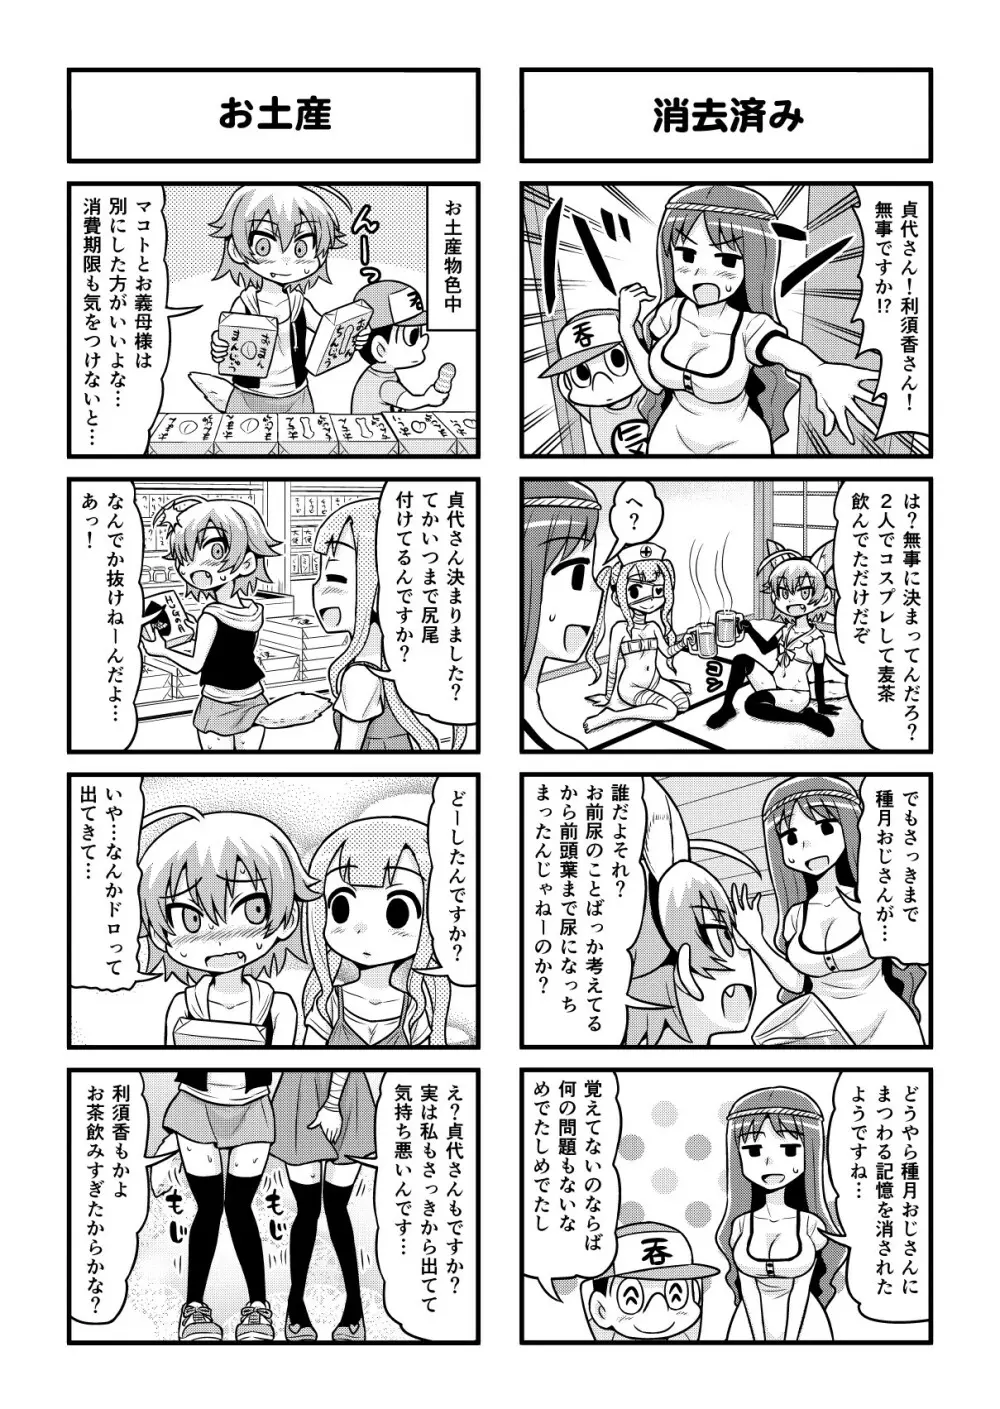 のんきBOY 1-48 - page321